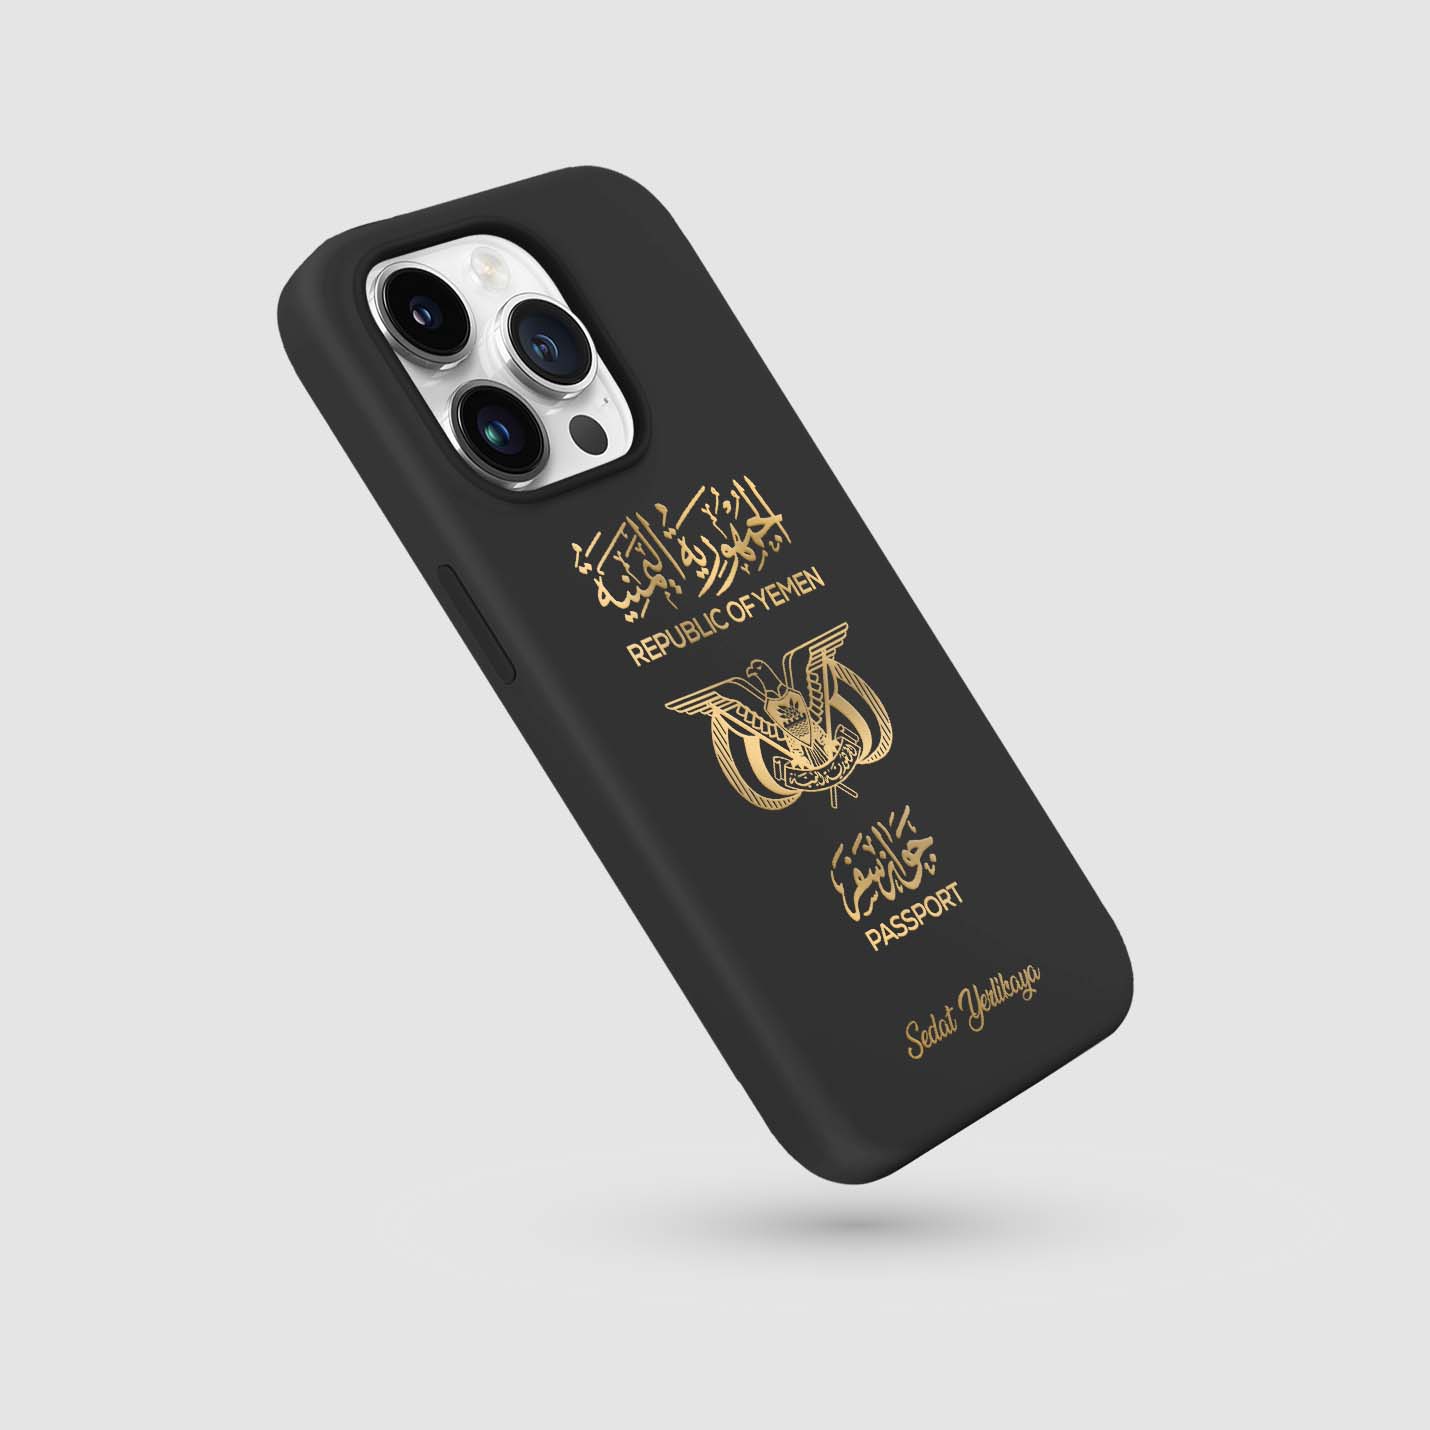 Handyhüllen mit Reisepass - Jemen - 1instaphone